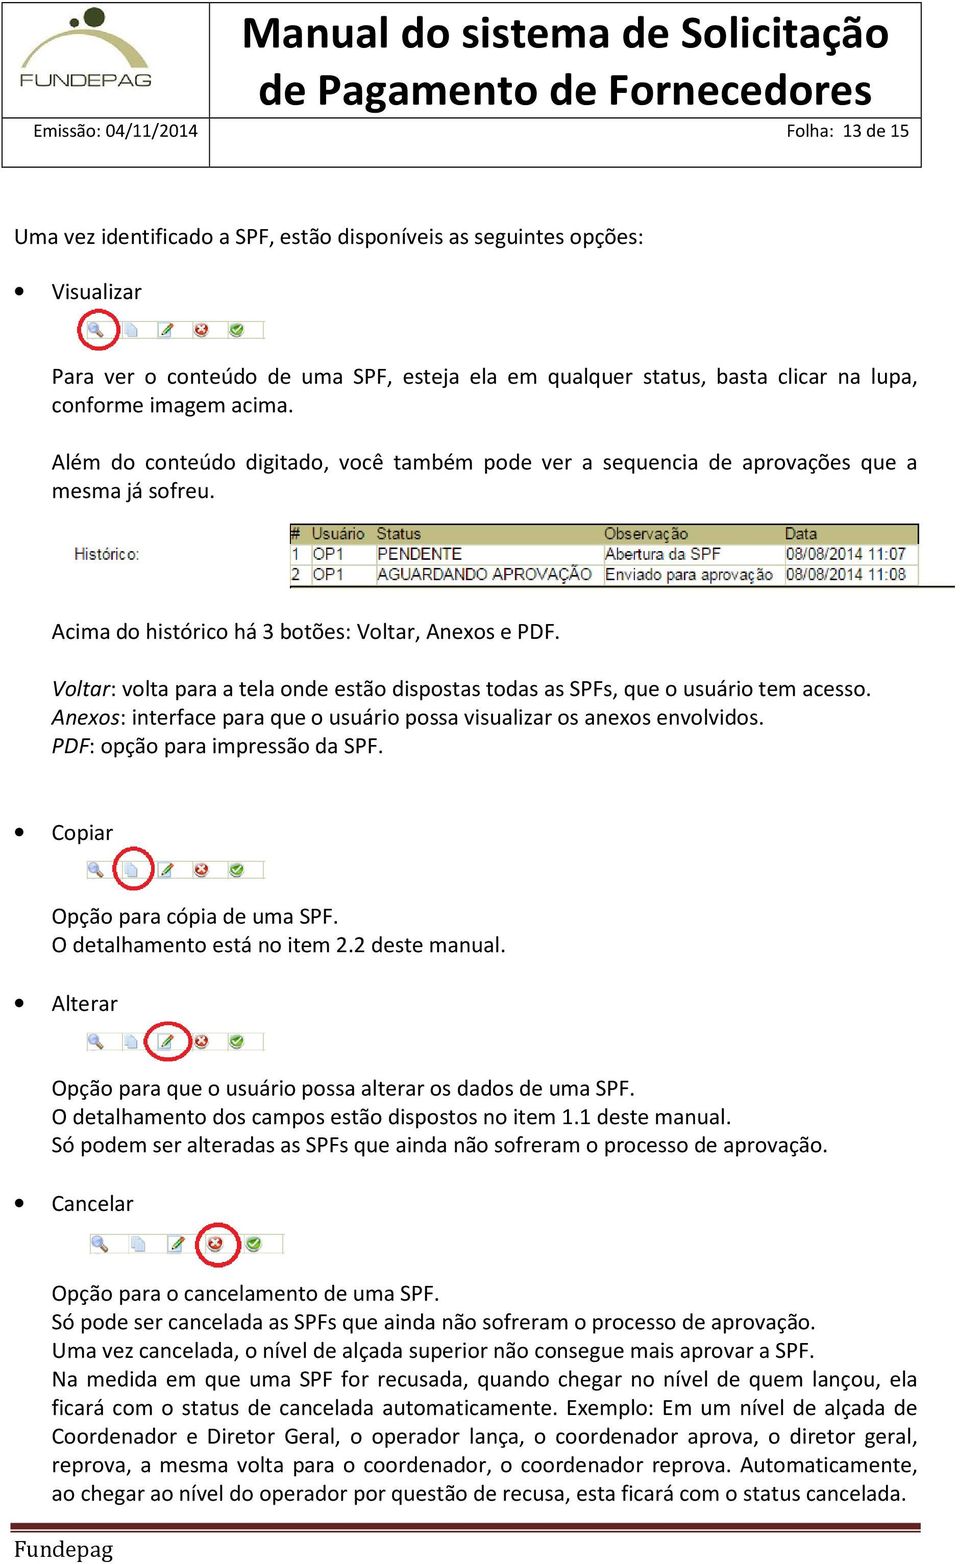 Voltar: volta para a tela onde estão dispostas todas as SPFs, que o usuário tem acesso. Anexos: interface para que o usuário possa visualizar os anexos envolvidos. PDF: opção para impressão da SPF.